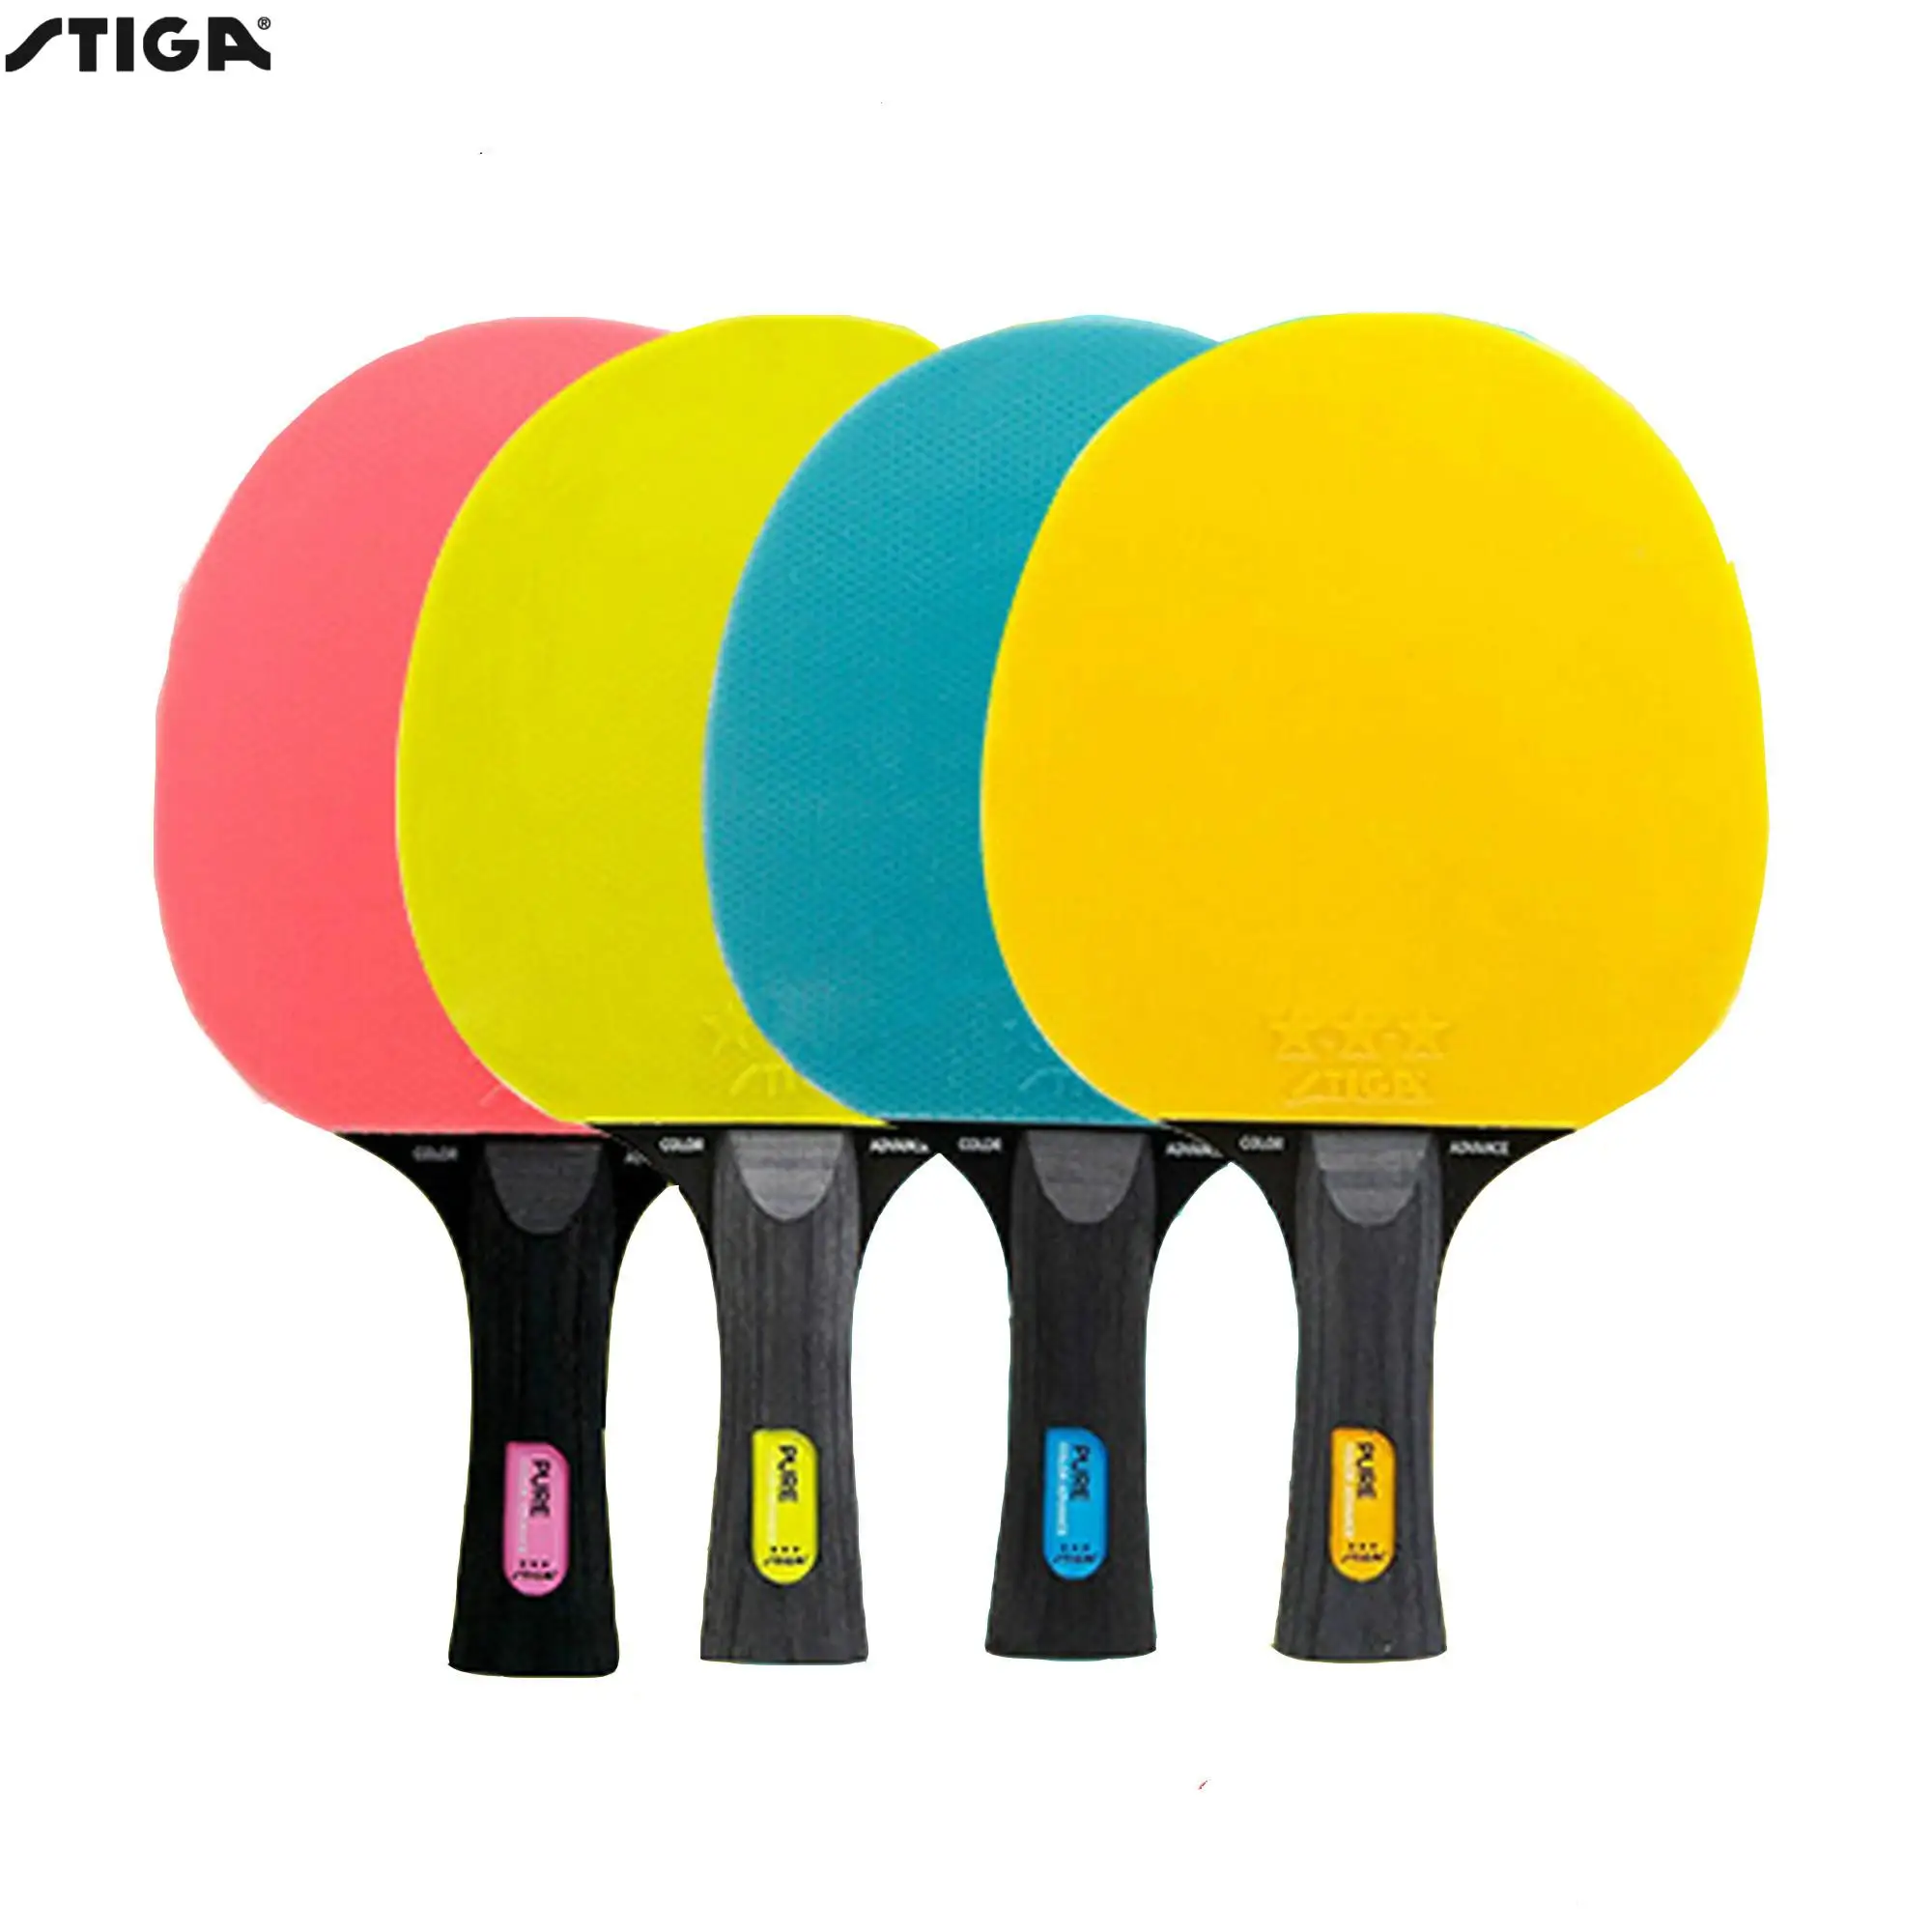 stiga чистый настольный теннис ракетки цветная настольная Теннисная ракетка плеер готовые ракетки спортивные ракетки stiga